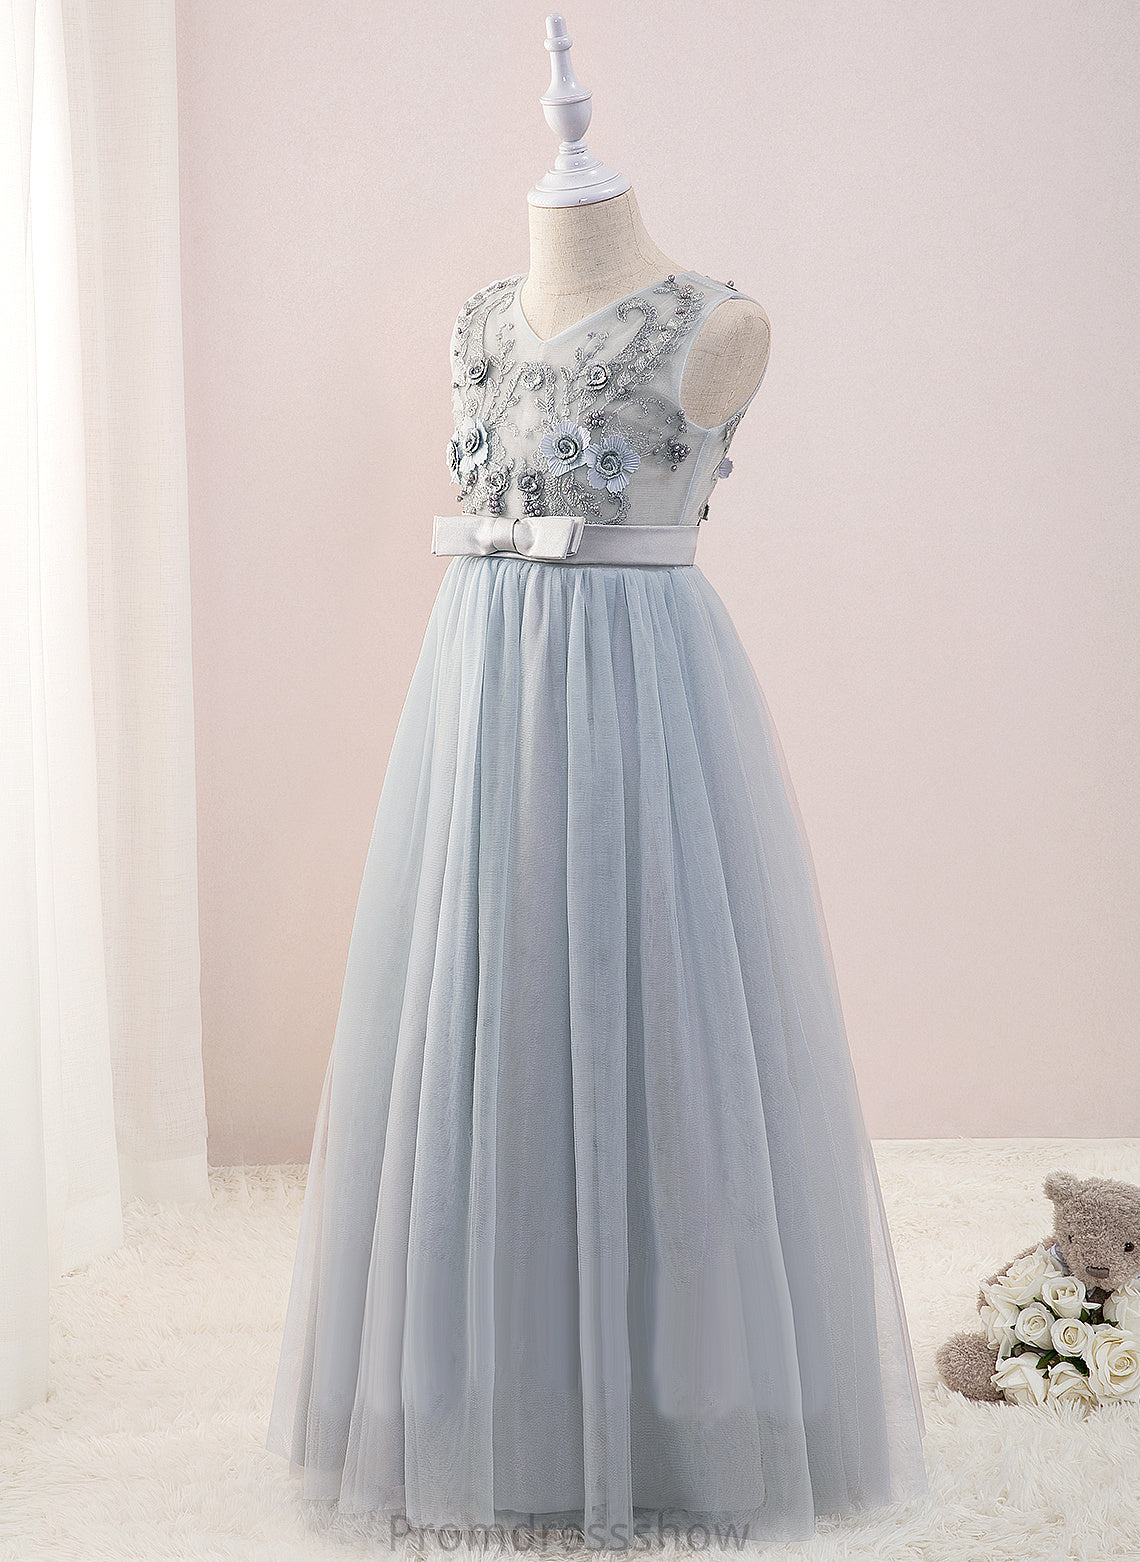 Beading/Flower(s) Flower Girl Dresses With Flower Sleeveless Floor-length Monica Dress - A-Line Tulle/Lace V-neck Girl